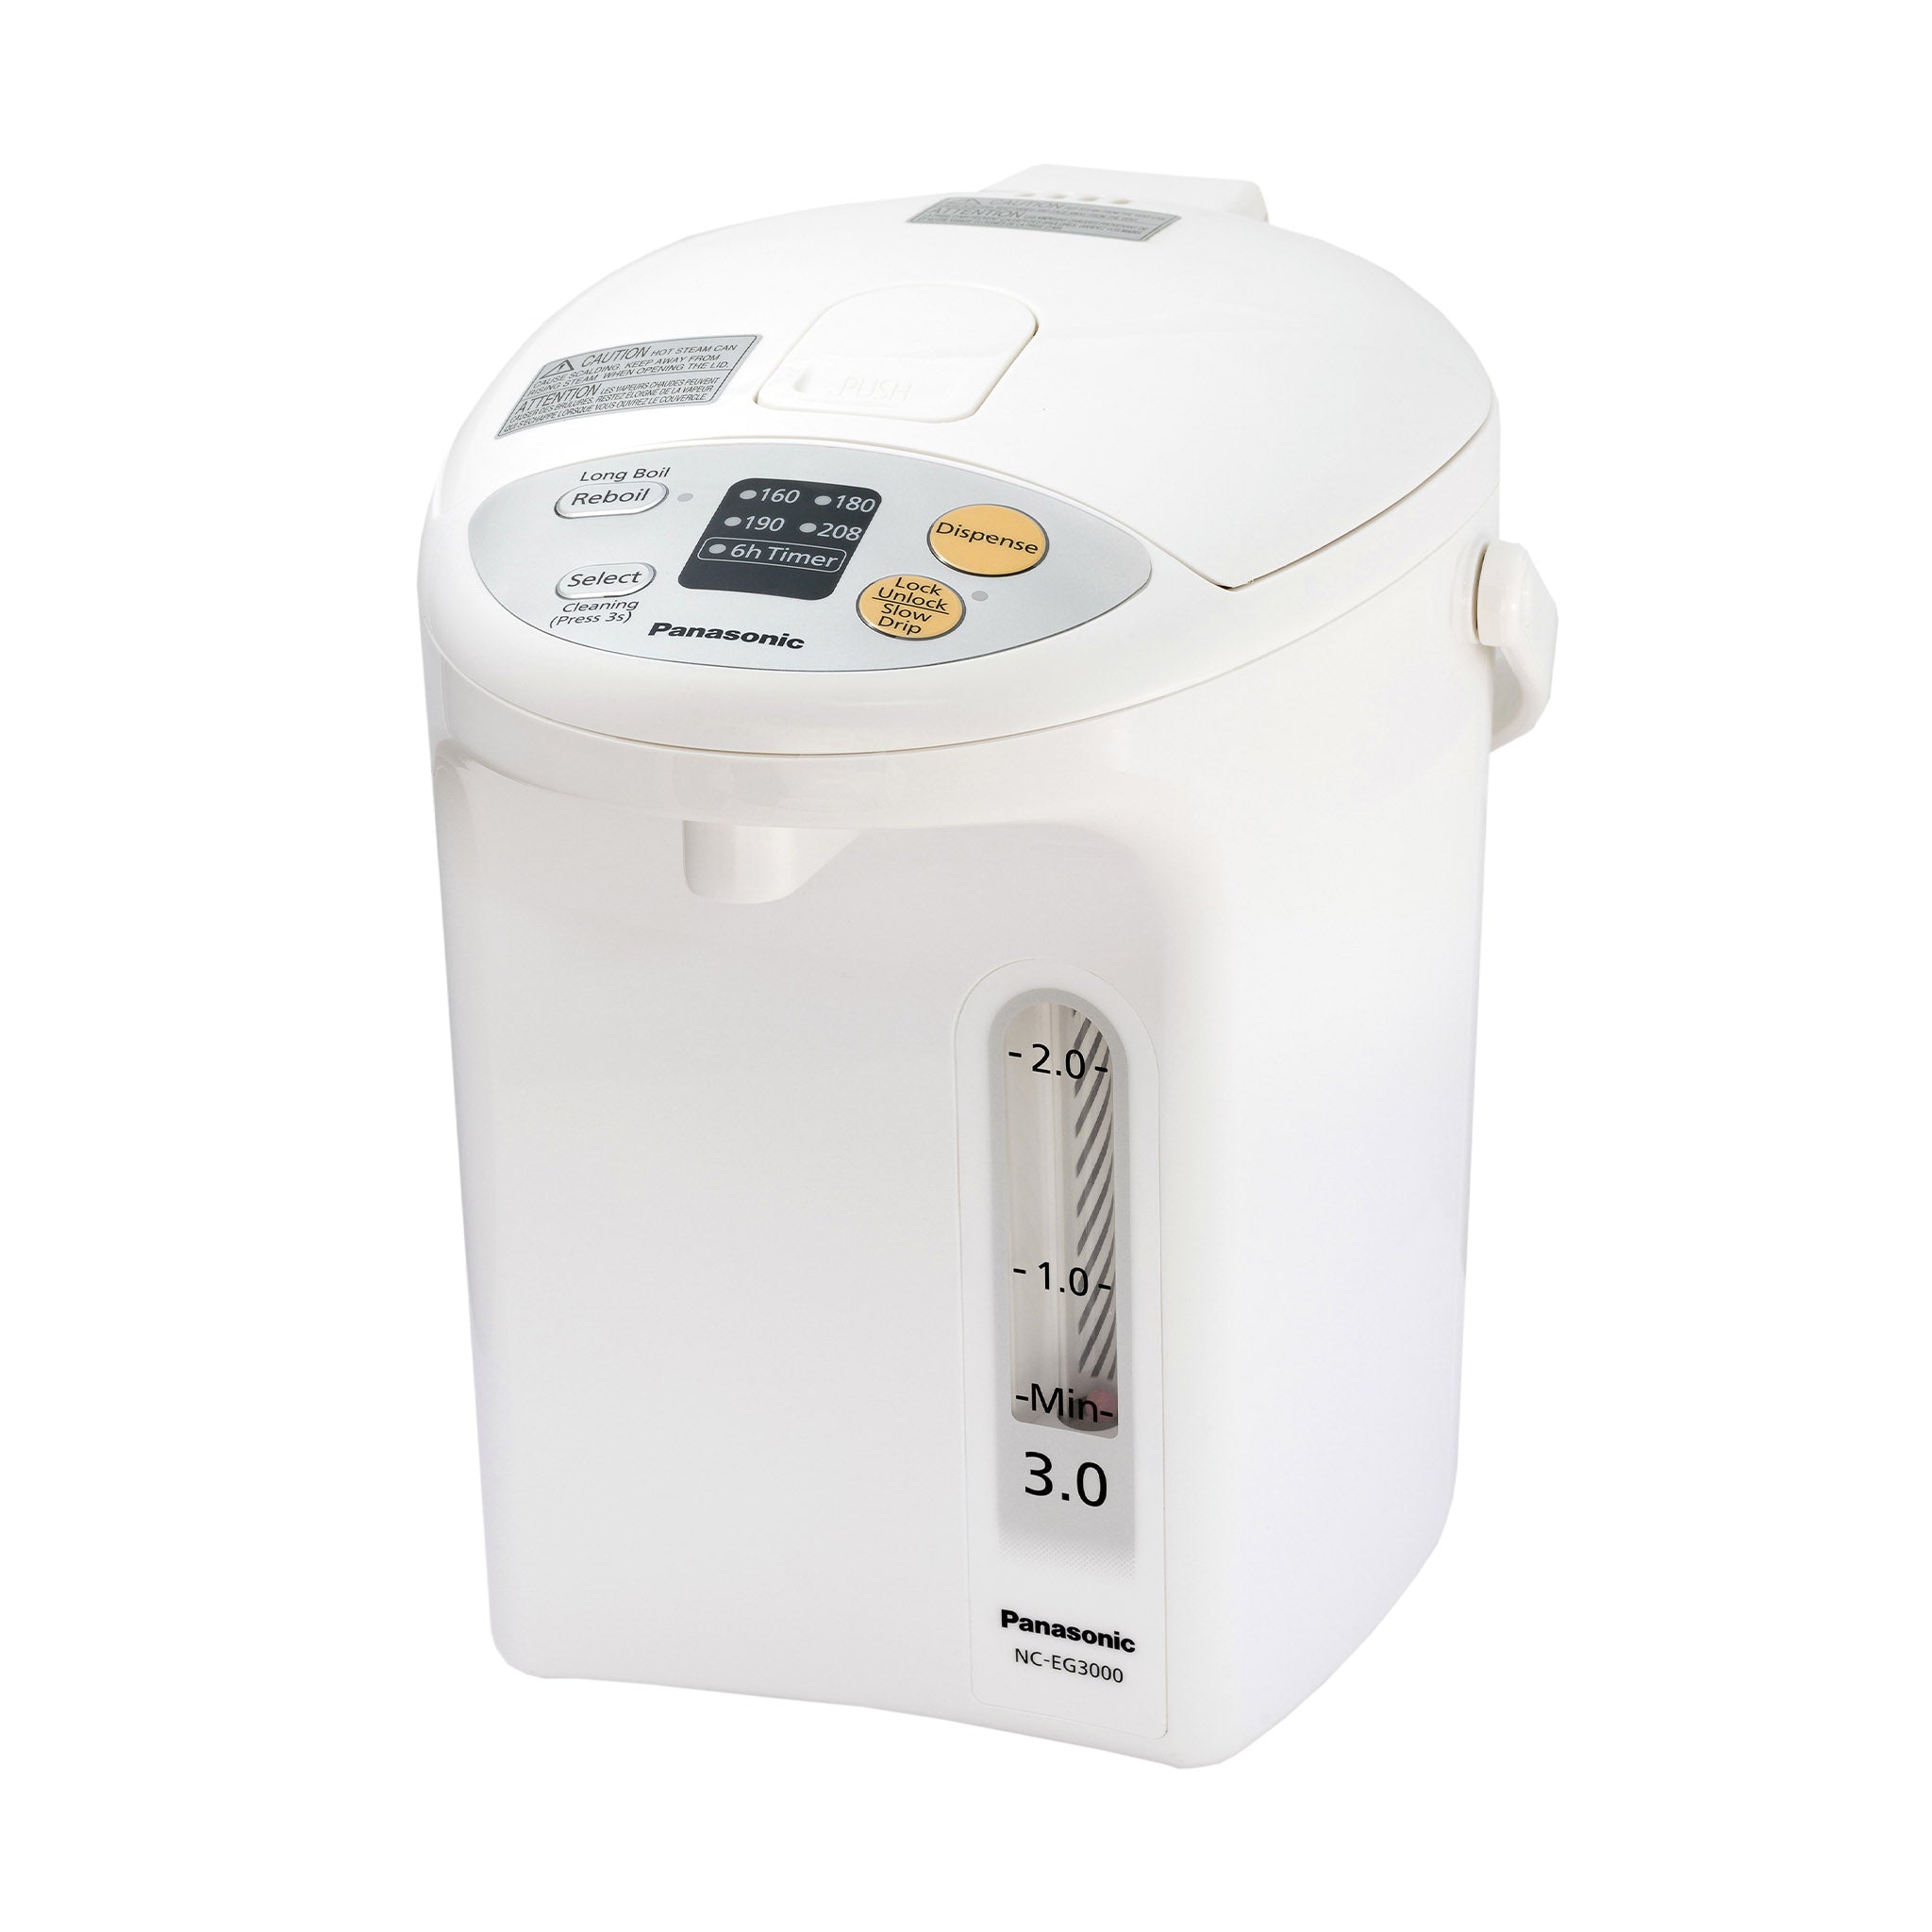 BALMUDA 3Go (450 g) electric cookerThe Gohan K03A-WH（White）